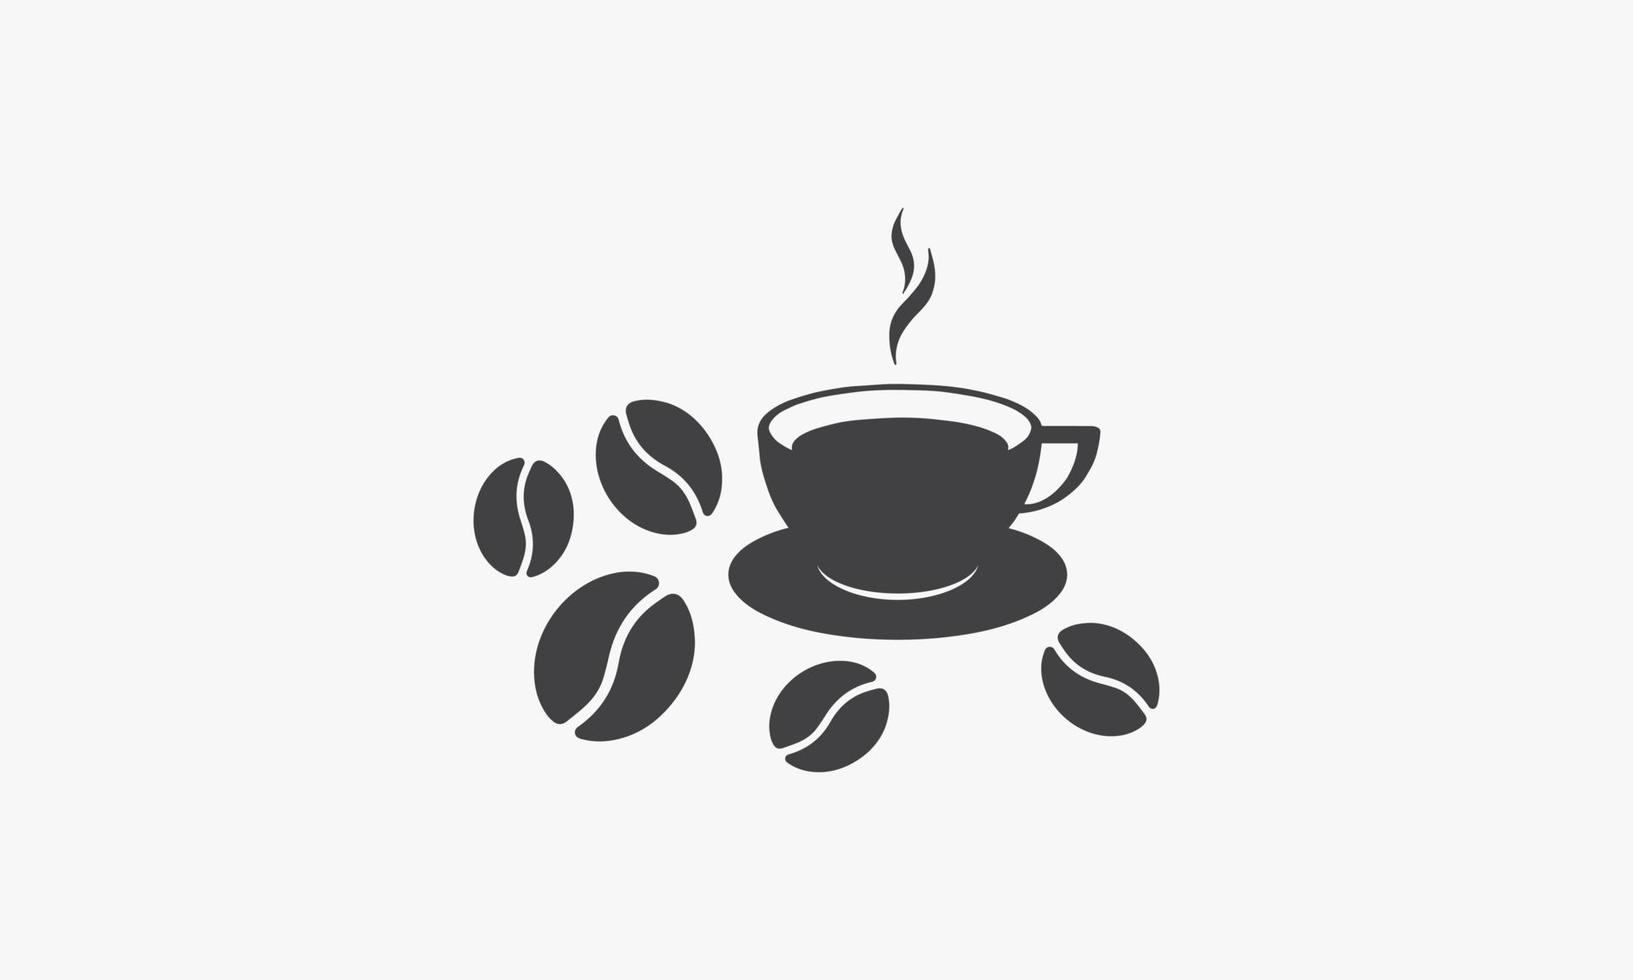 koffiekopje met koffieboon pictogram logo ontwerp vector op witte achtergrond.